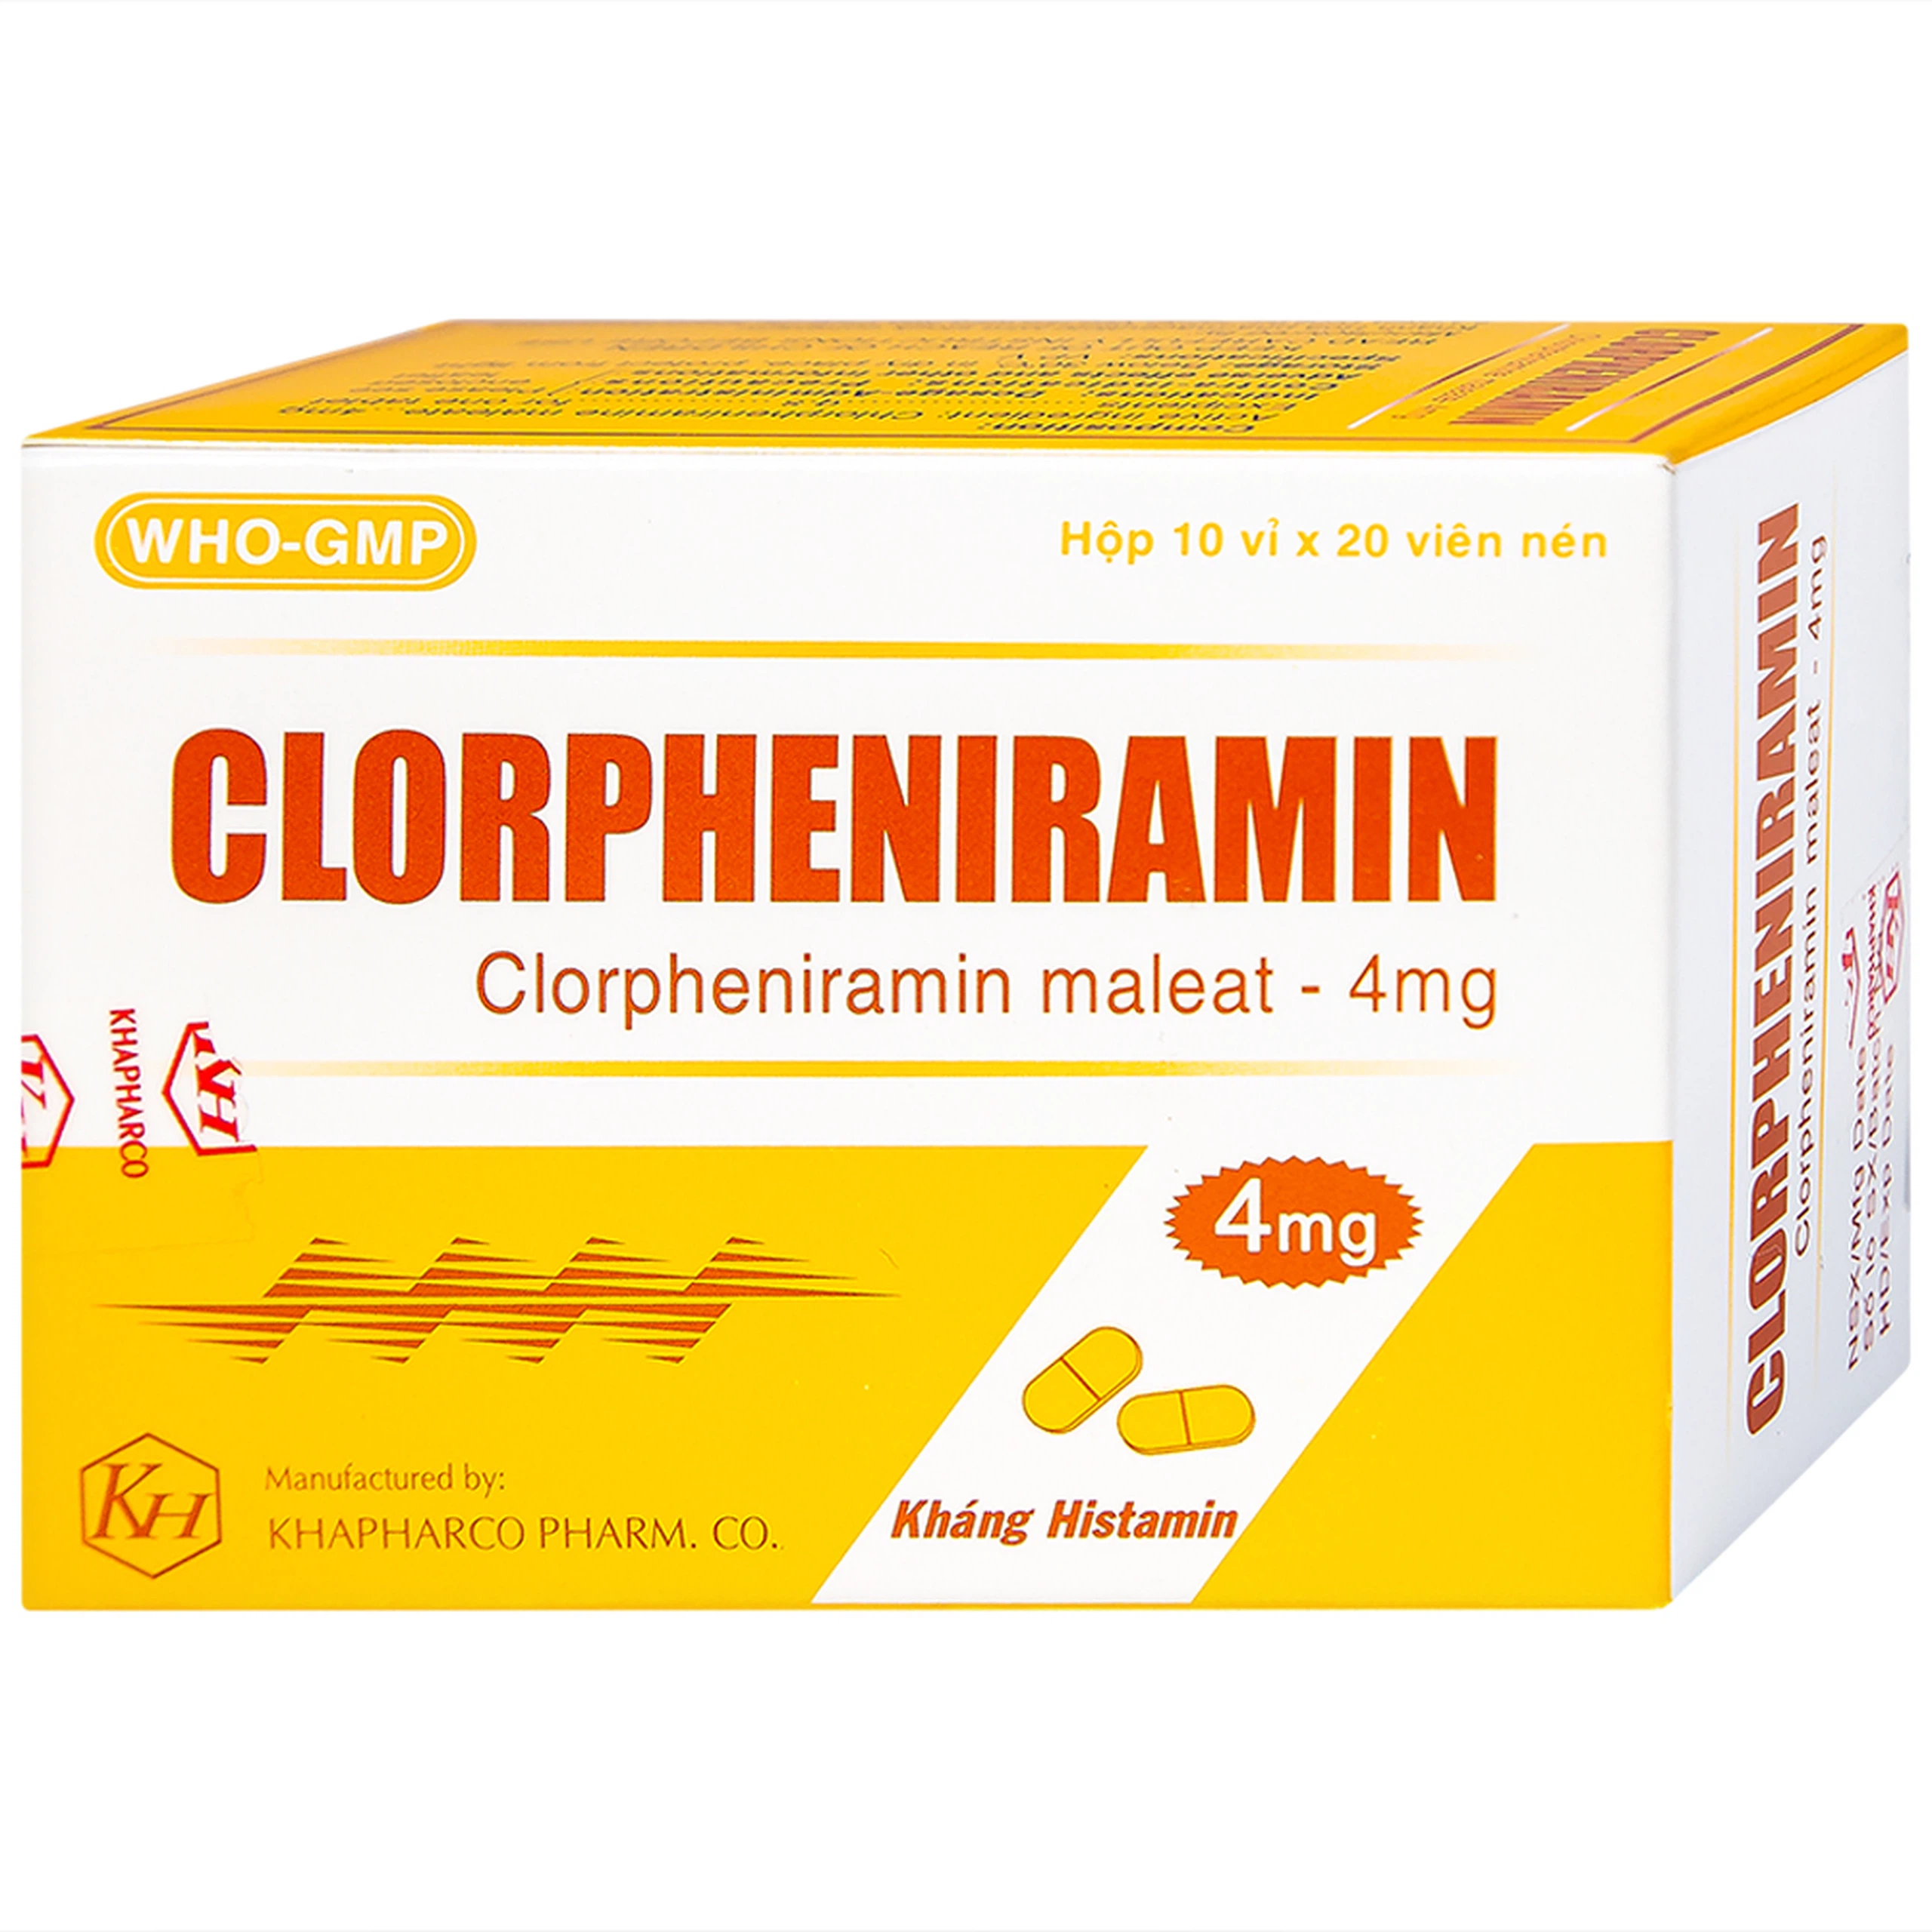 Thuốc Clorpheniramin 4mg Khapharco điều trị triệu chứng viêm mũi dị ứng theo mùa, quanh năm và mày đay (10 vỉ x 20 viên)